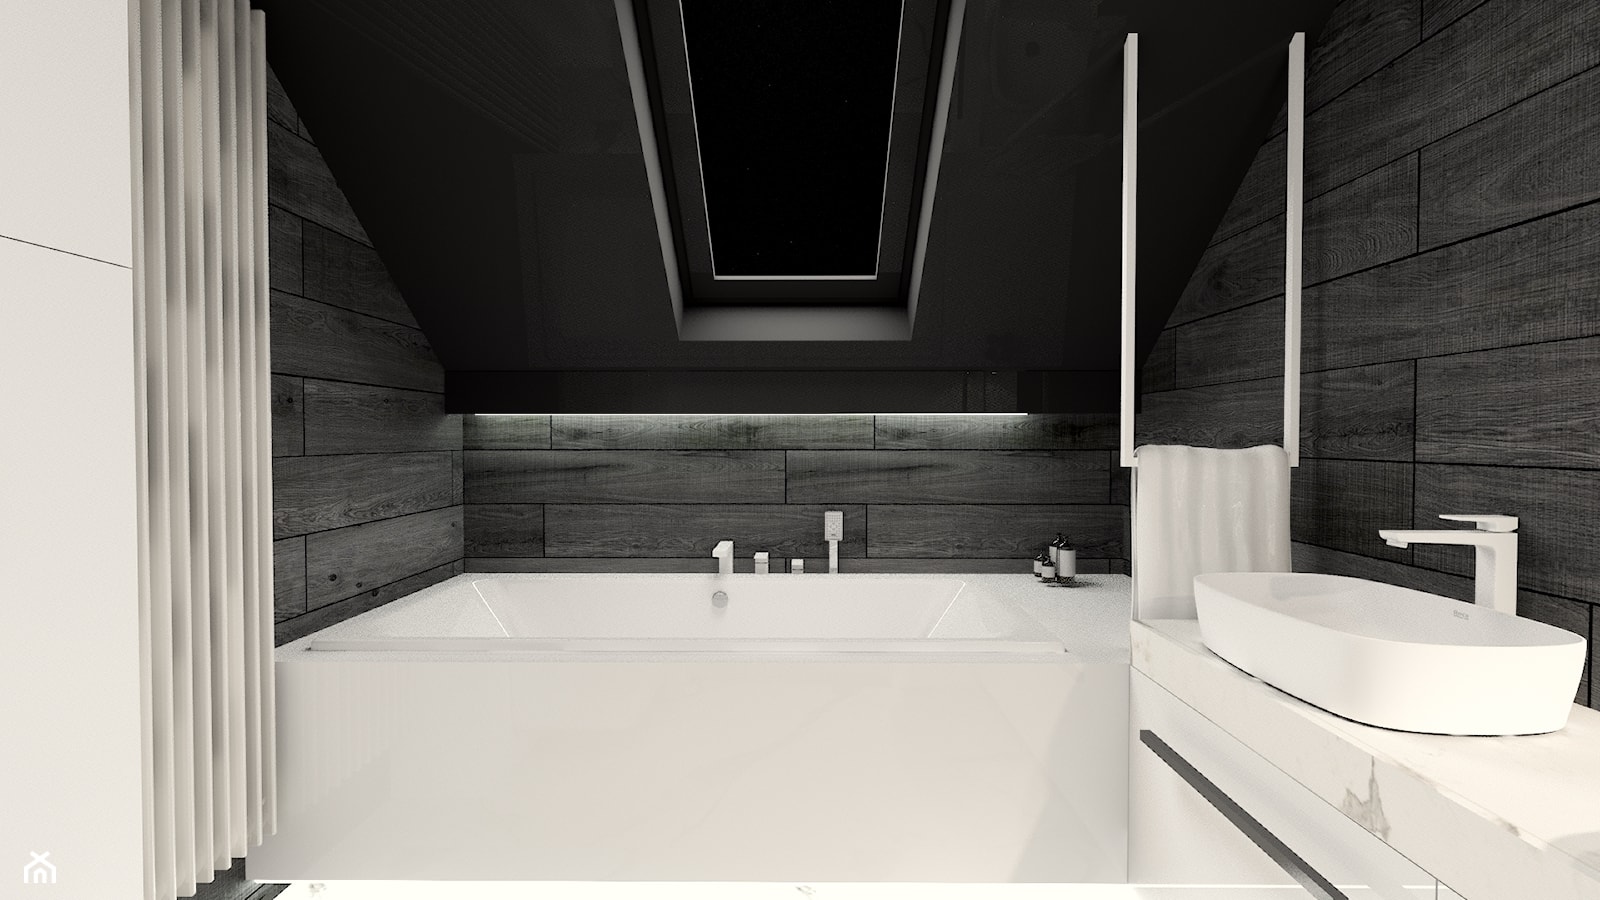 Czarno - biała łazienka - zdjęcie od Bubbles Studio - Homebook